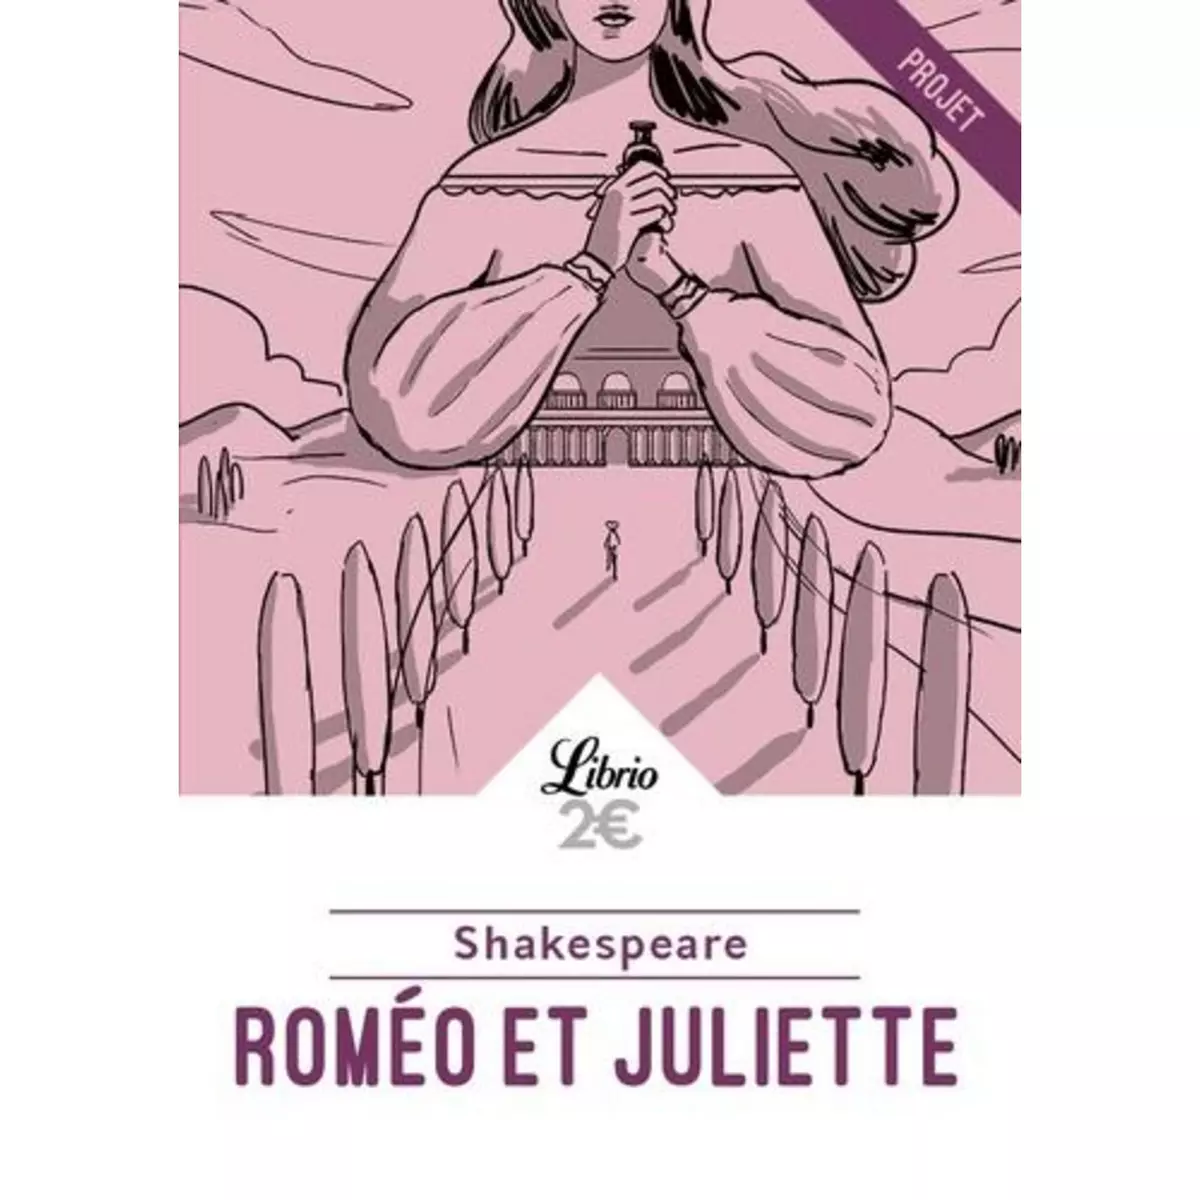  Roméo et Juliette, Shakespeare William